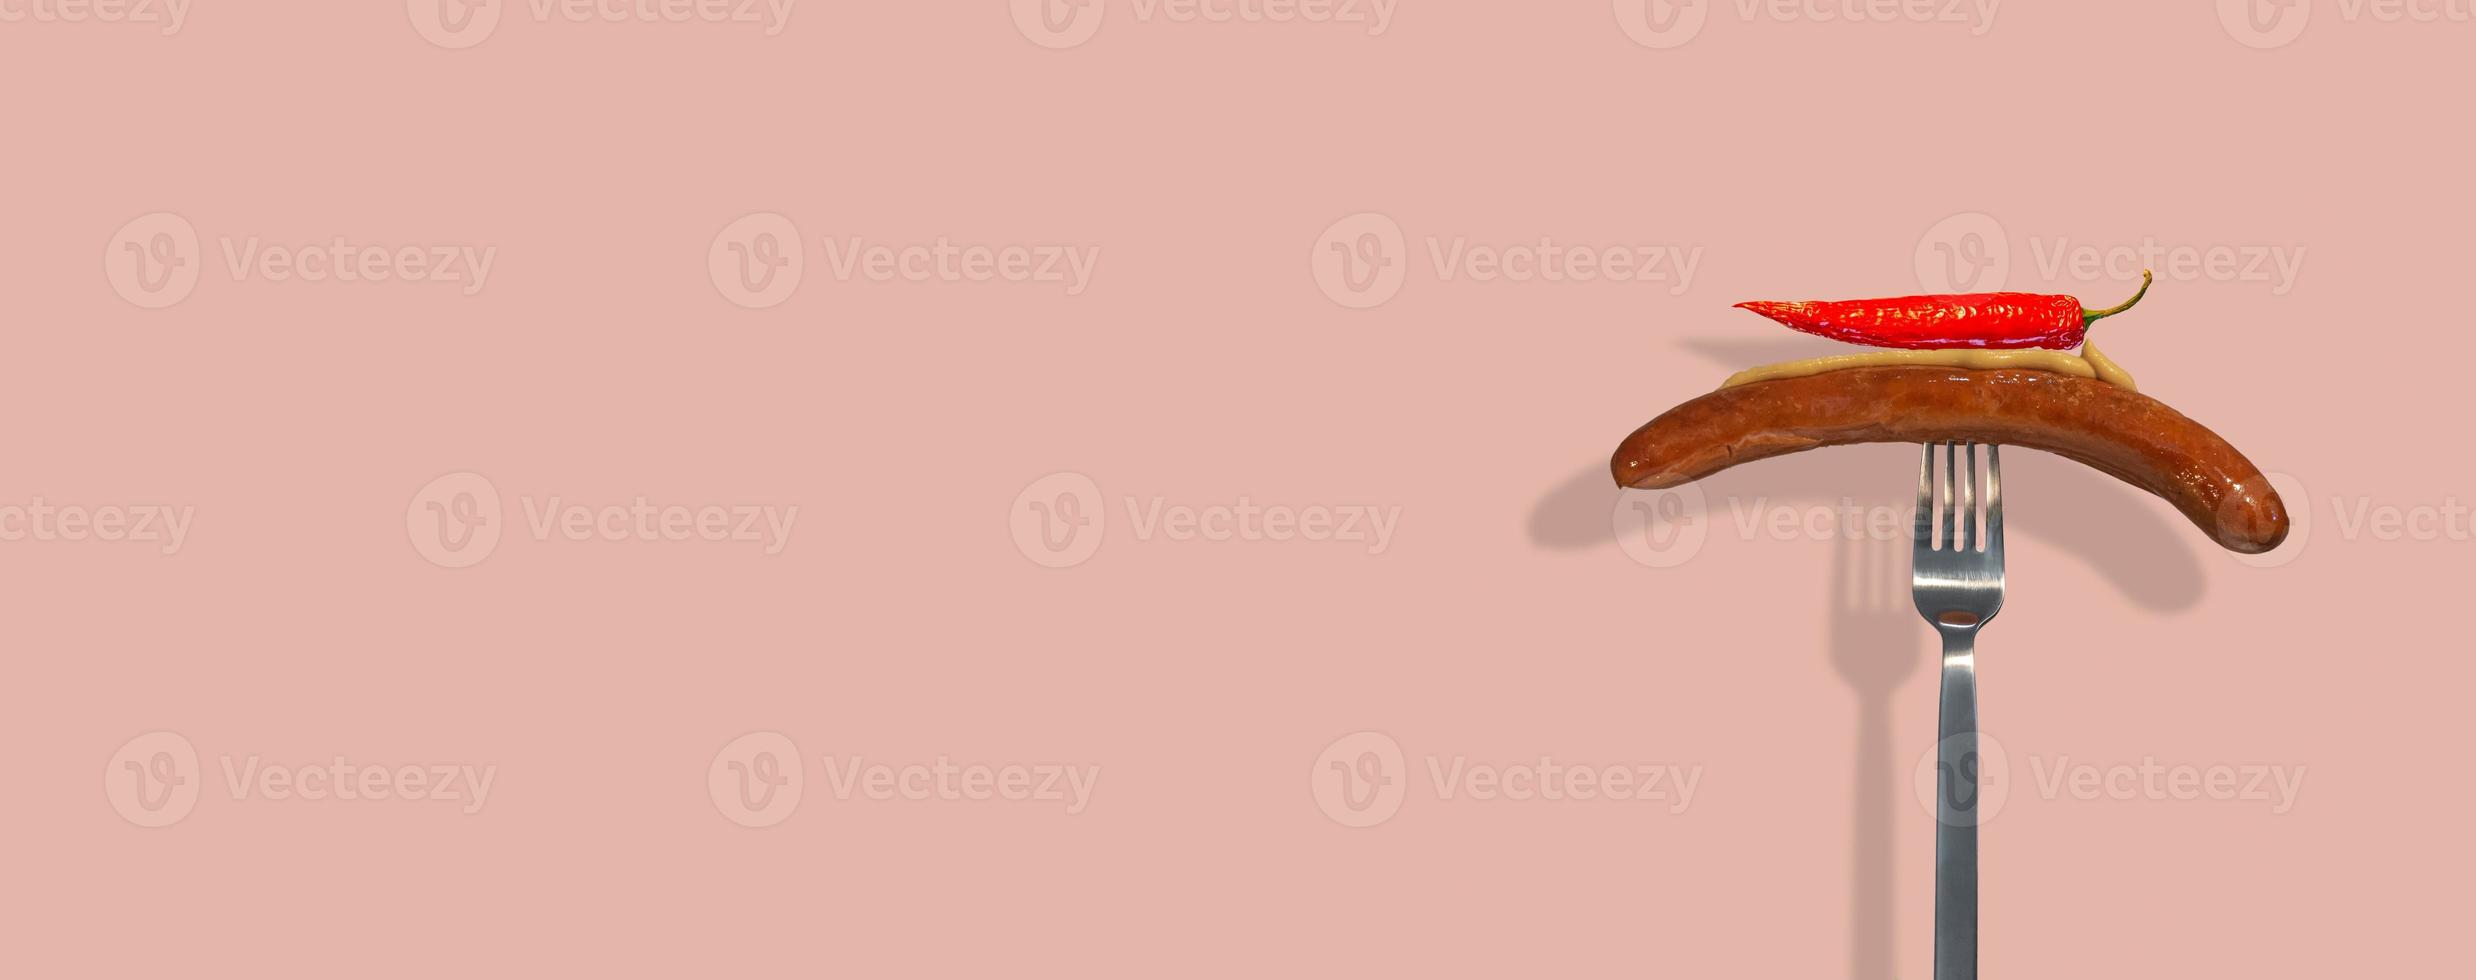 pancarta con una sola salchicha a la parrilla con mostaza y pimiento rojo picante puesto en un tenedor moderno de metal en un fondo de color rosa sólido con espacio para copiar texto. concepto de comida callejera y cocina. foto